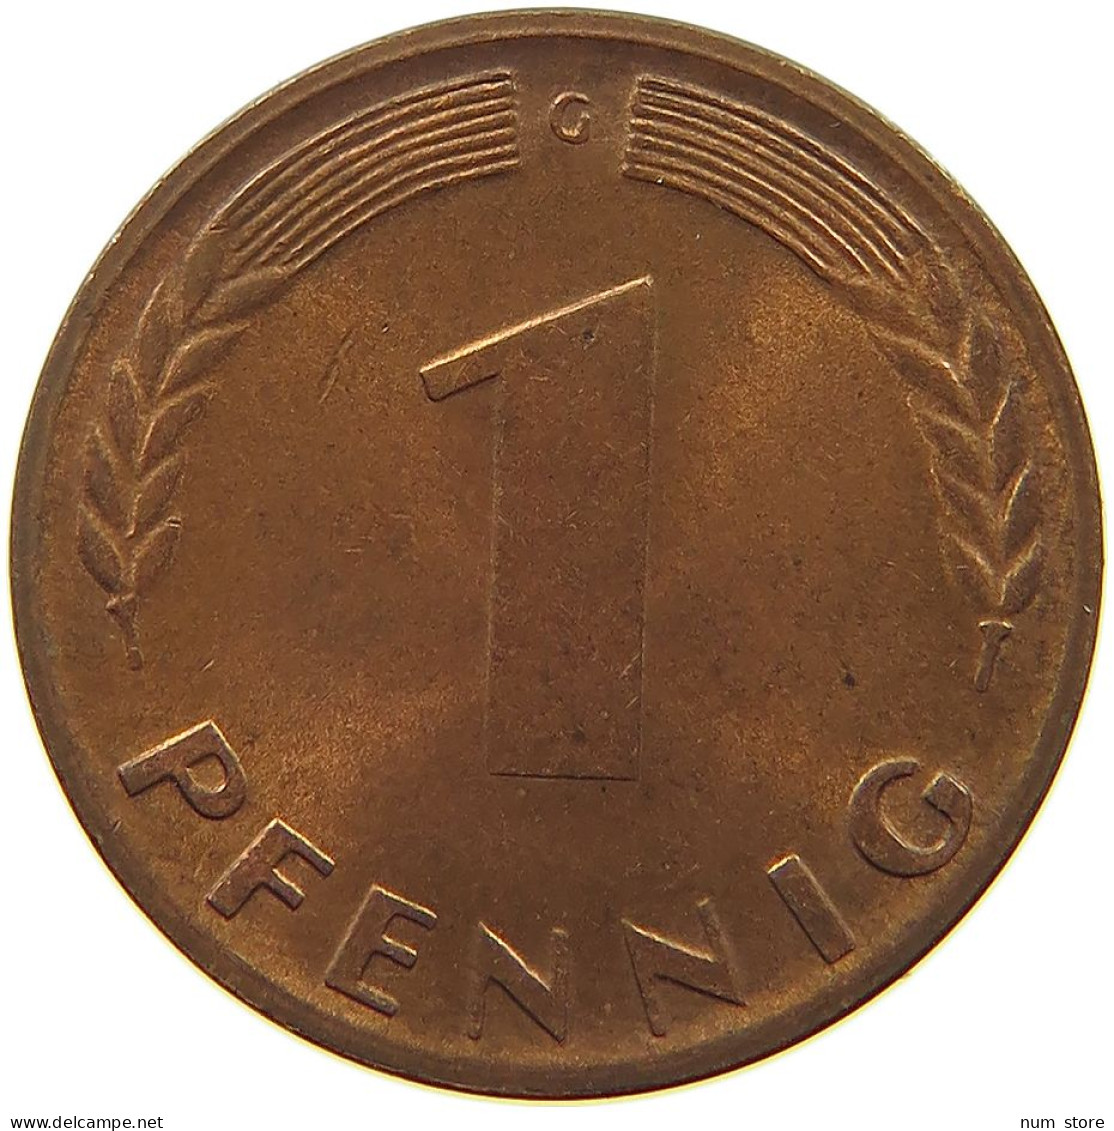 GERMANY WEST 1 PFENNIG 1950 G #a074 0873 - 1 Pfennig